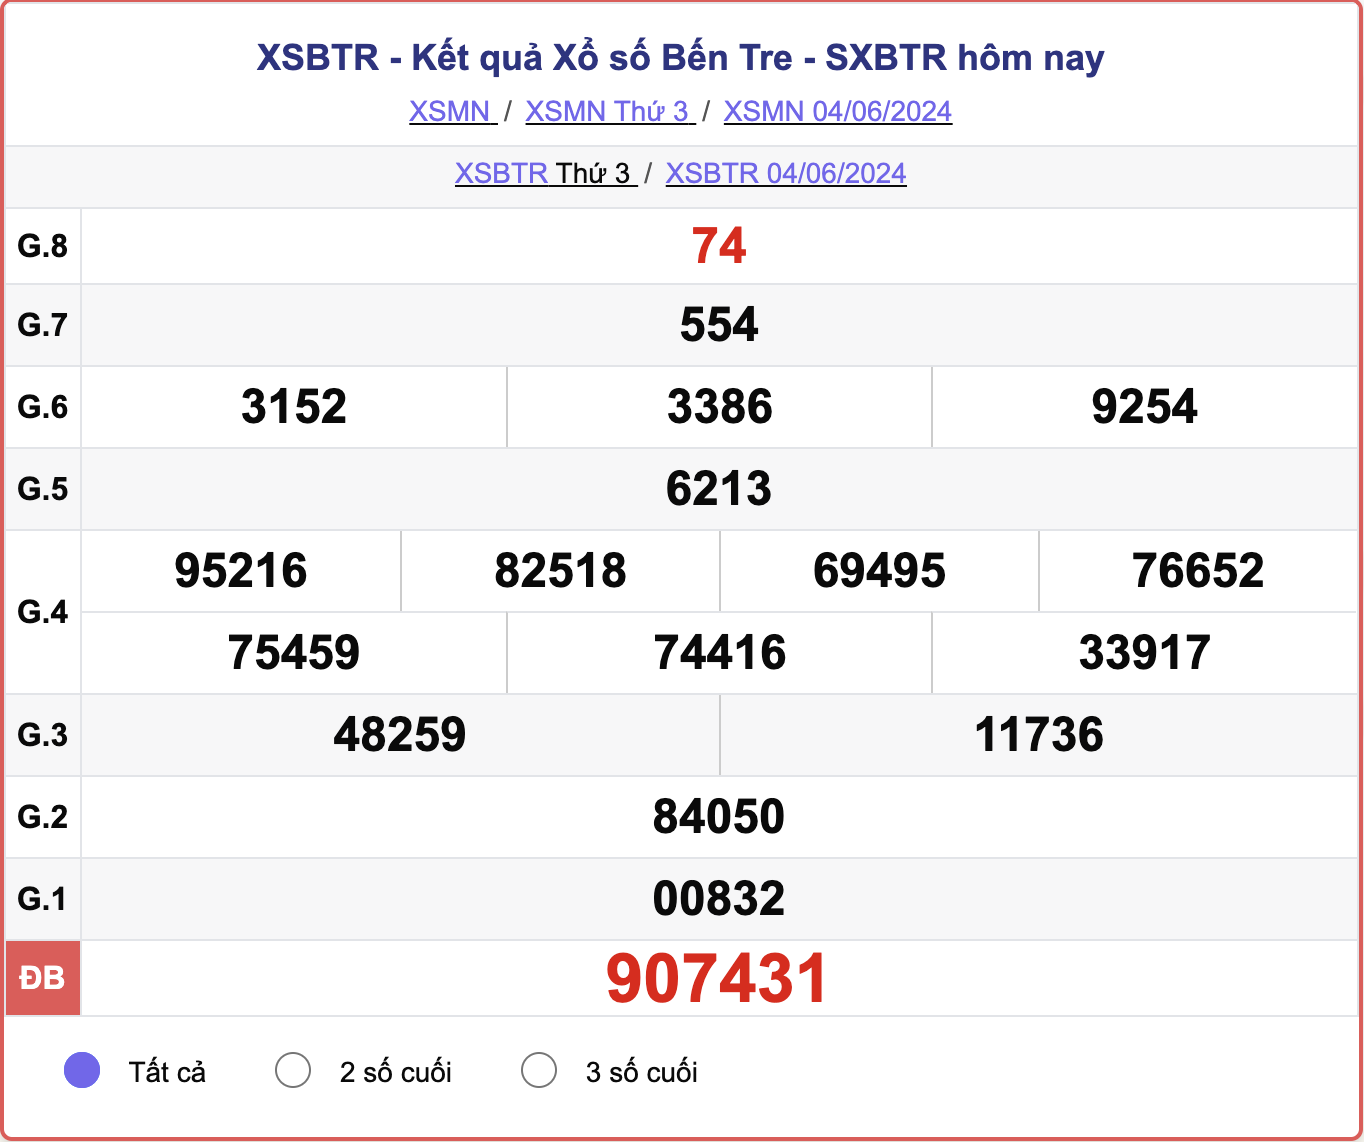 XSBTR 4/6, kết quả xổ số Bến Tre hôm nay 4/6/2024.